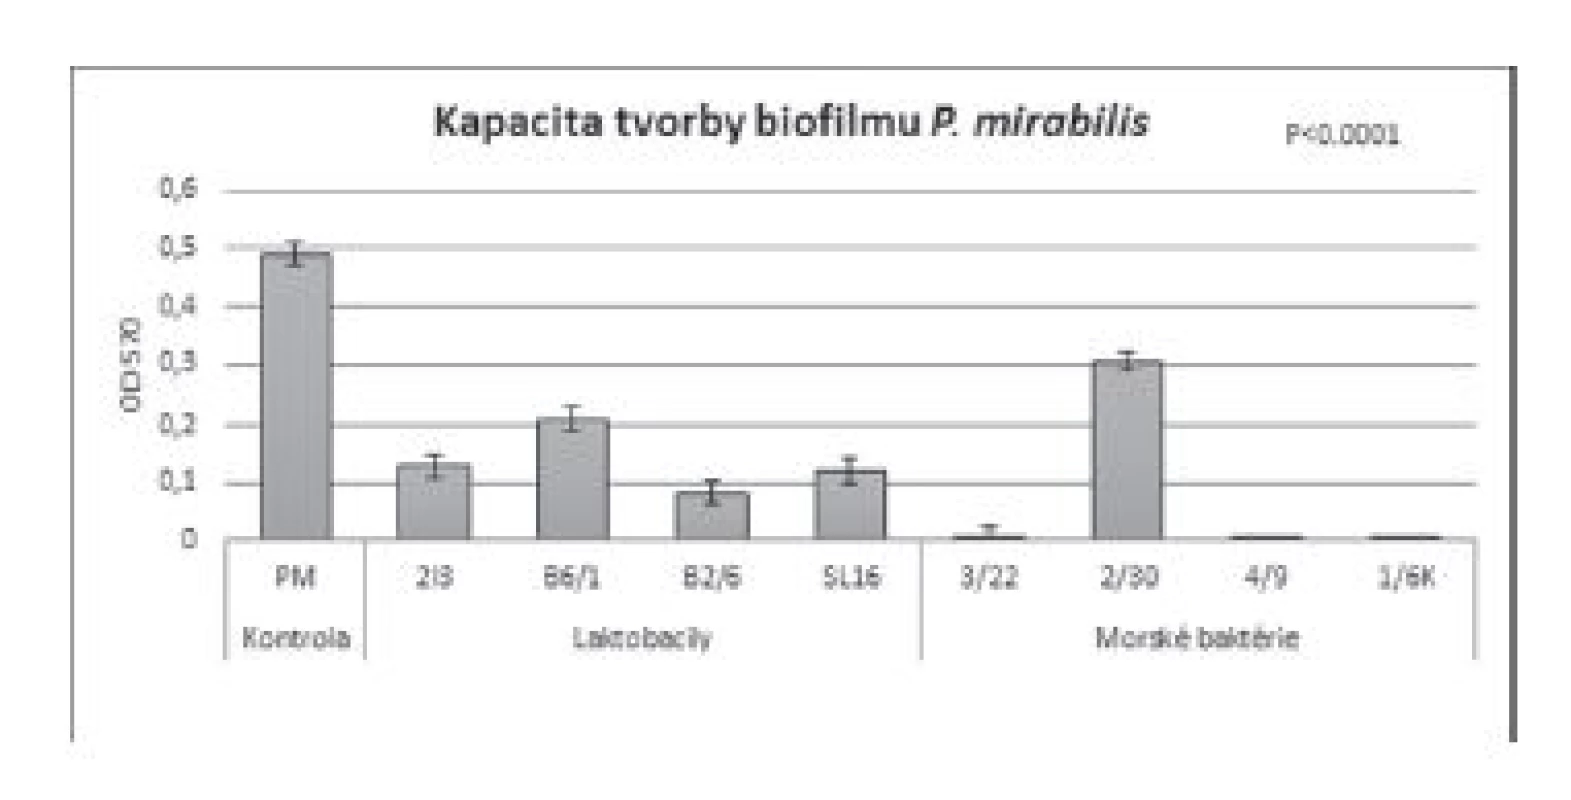 Antibiofilmová aktivita BS (c = 8,57 mg/ml) izolovaných
z laktobacilov a morských baktérií voči P. mirabilis CCM 7188